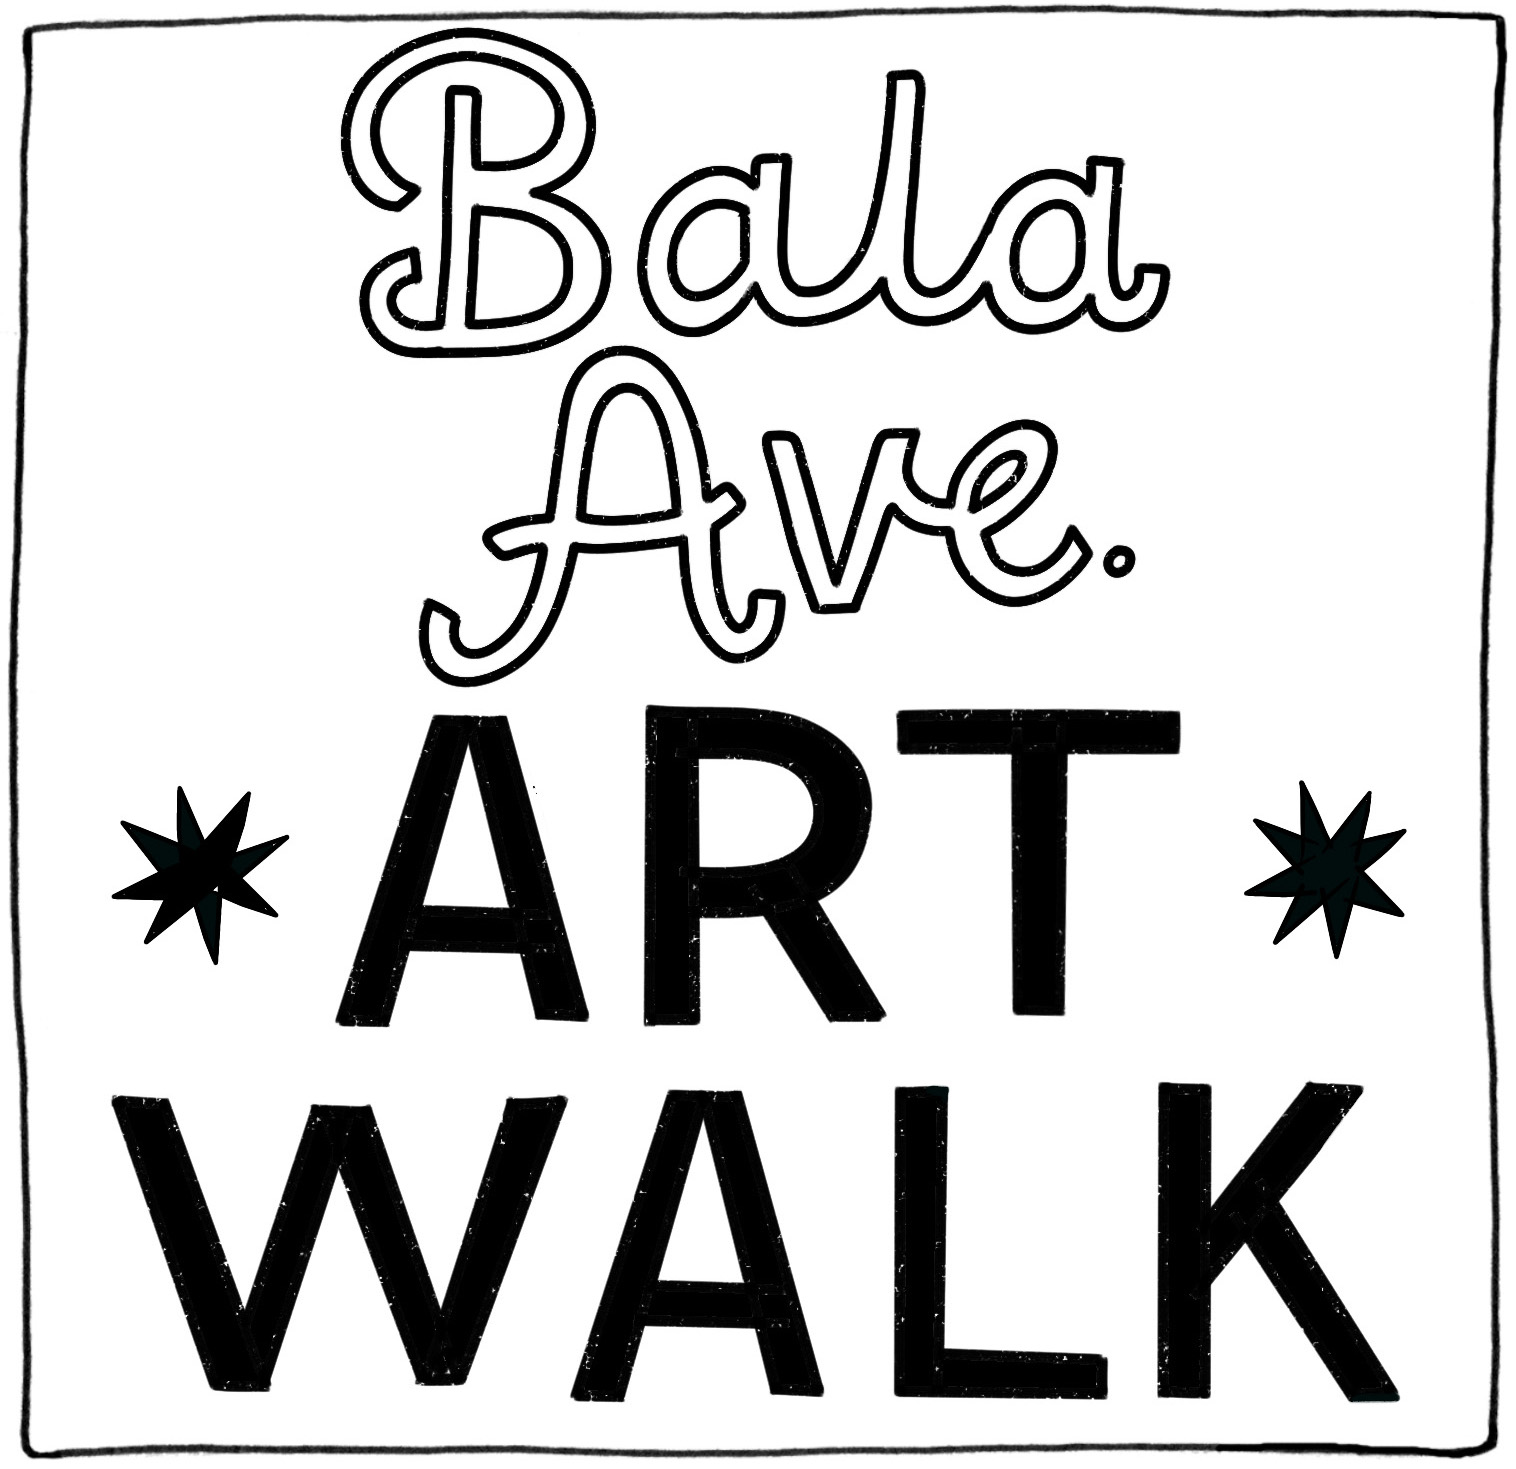 Art Star Bala Ave Walk